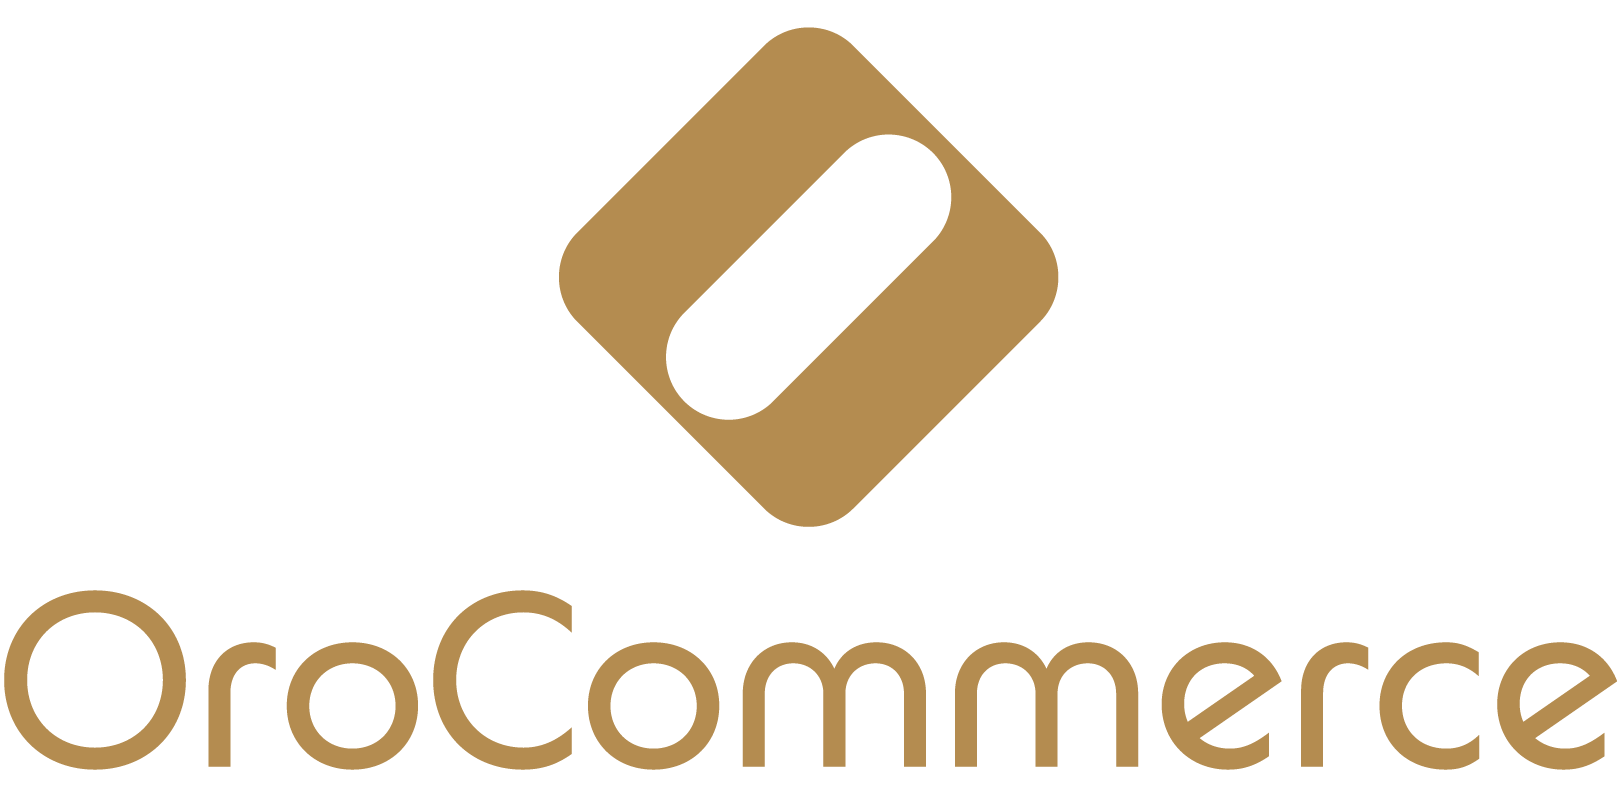 Orocommerce